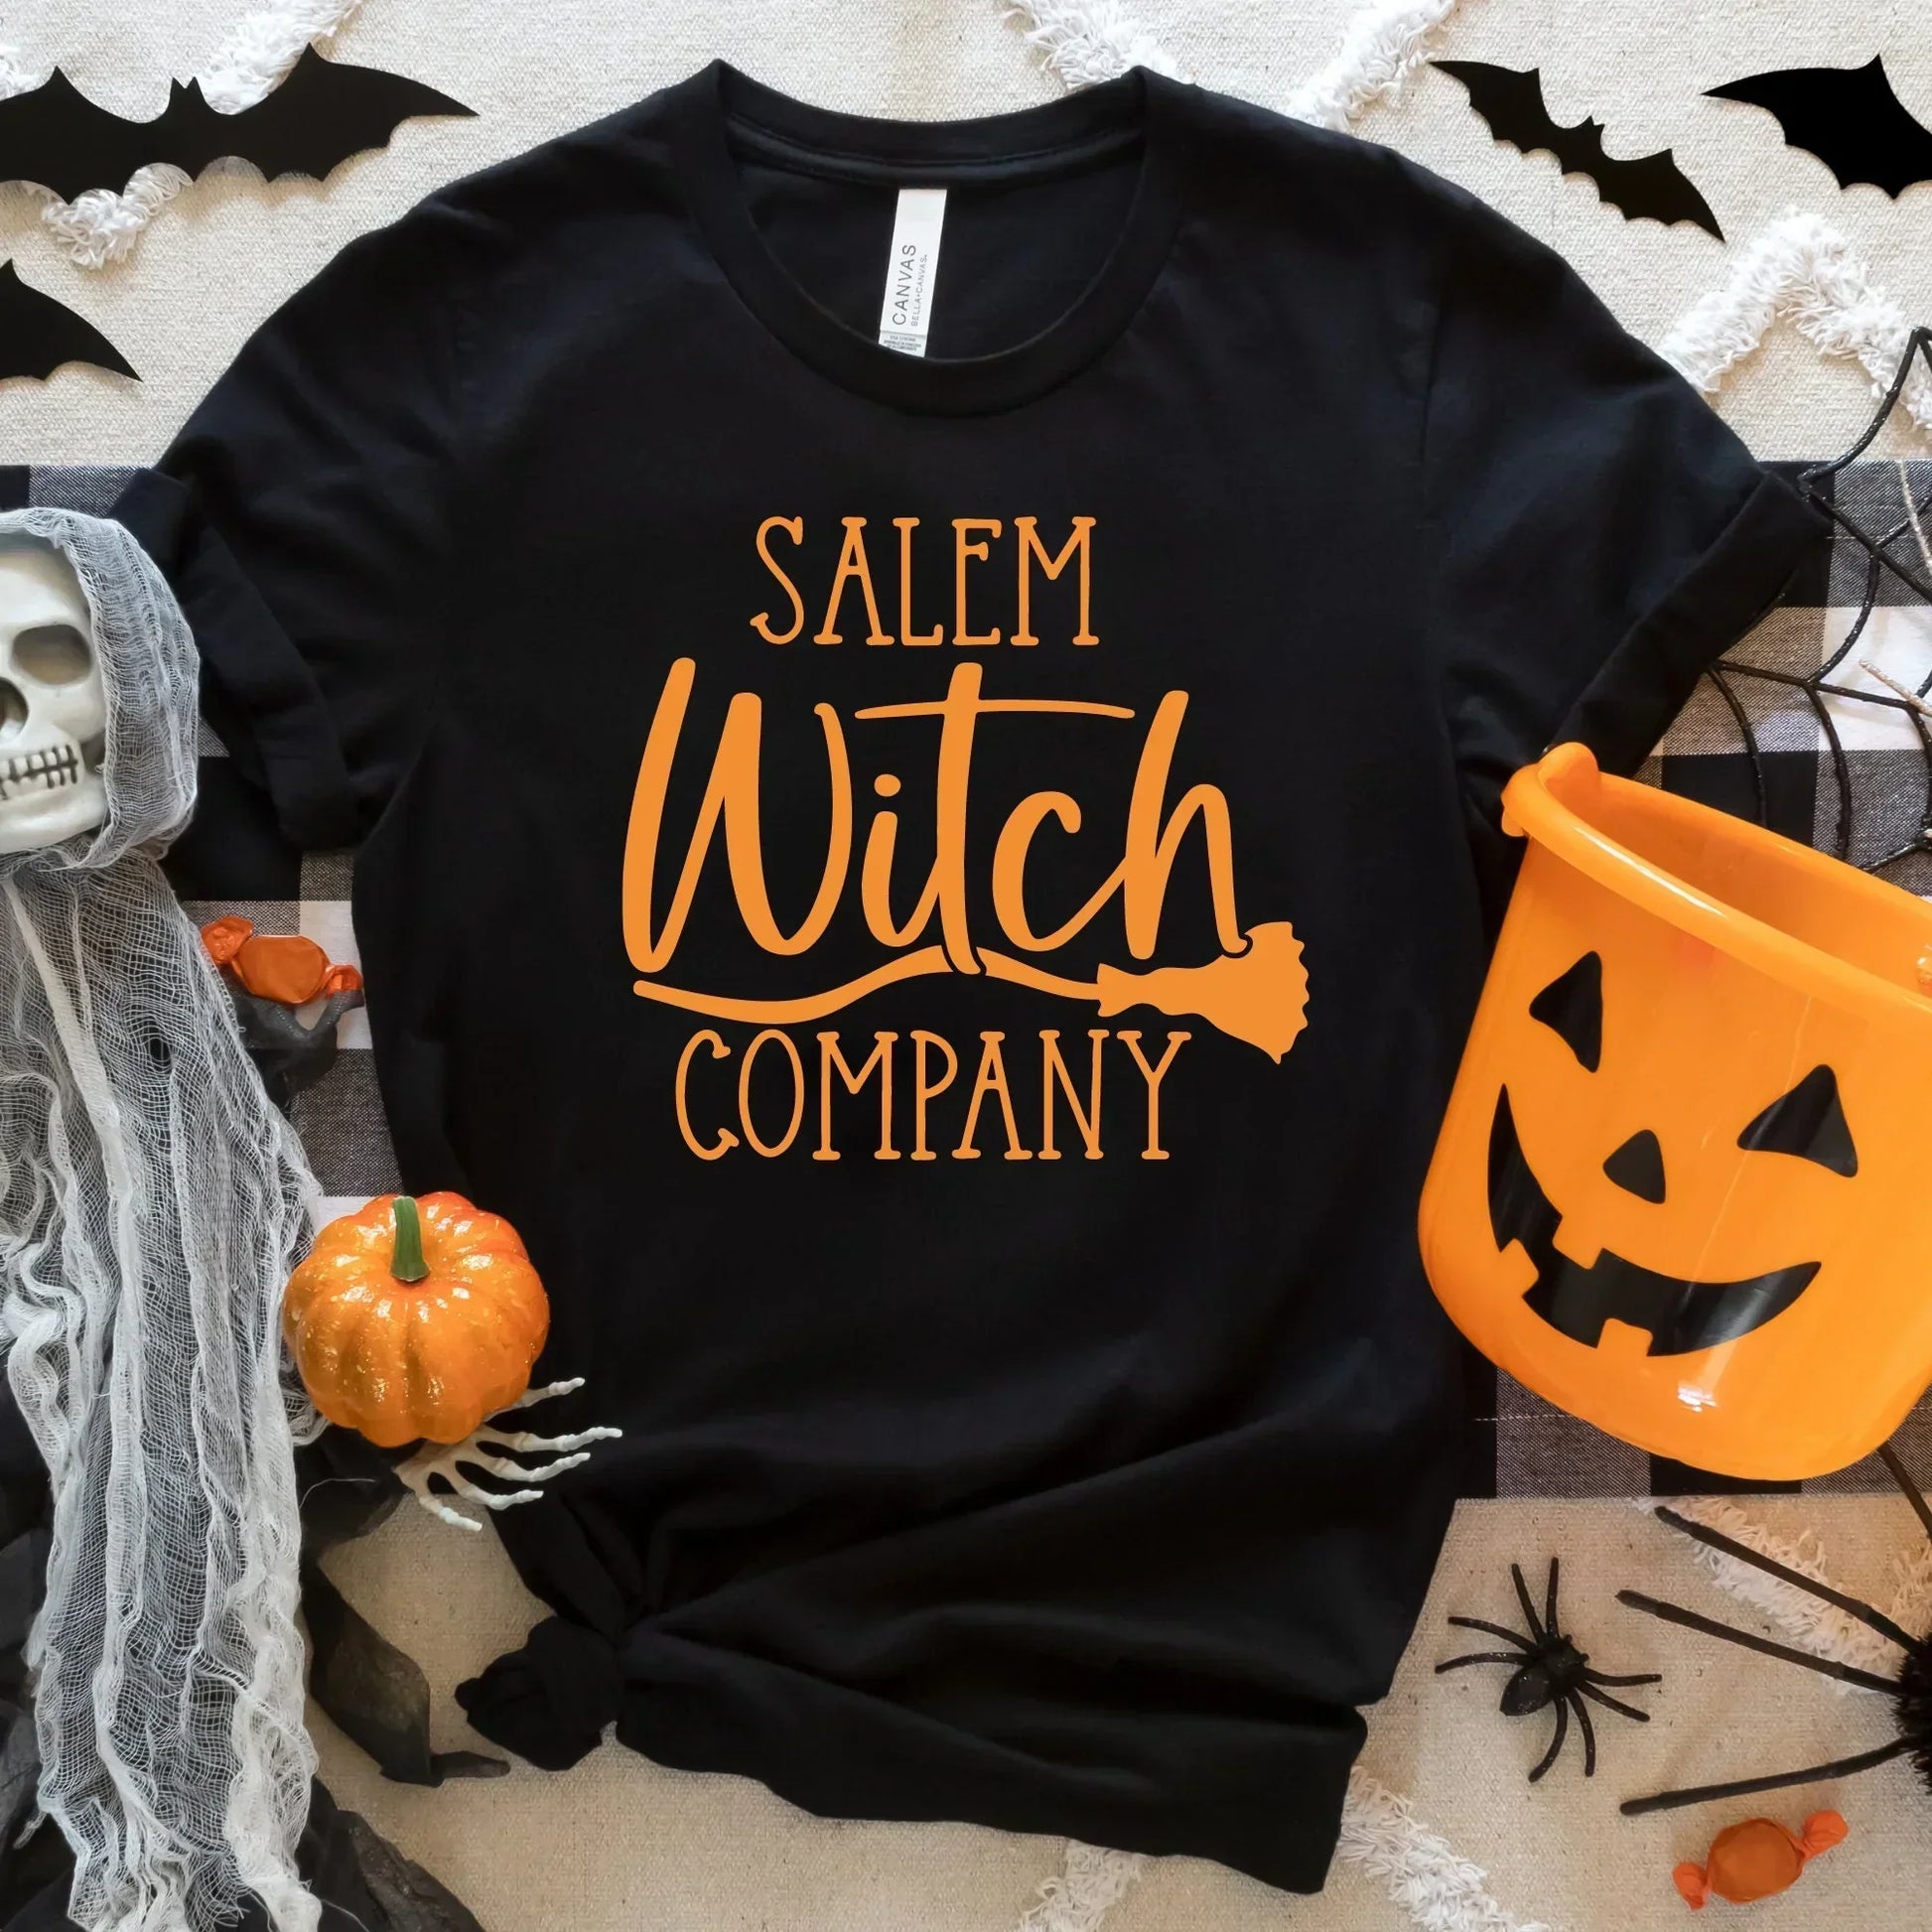 Salem Witch Company Halloween Sweater, Halloween Crewneck, Funny Halloween Party, Cute Halloween Hoodie, Halloween Cat Shirt, Witch Shirt HMDesignStudioUS